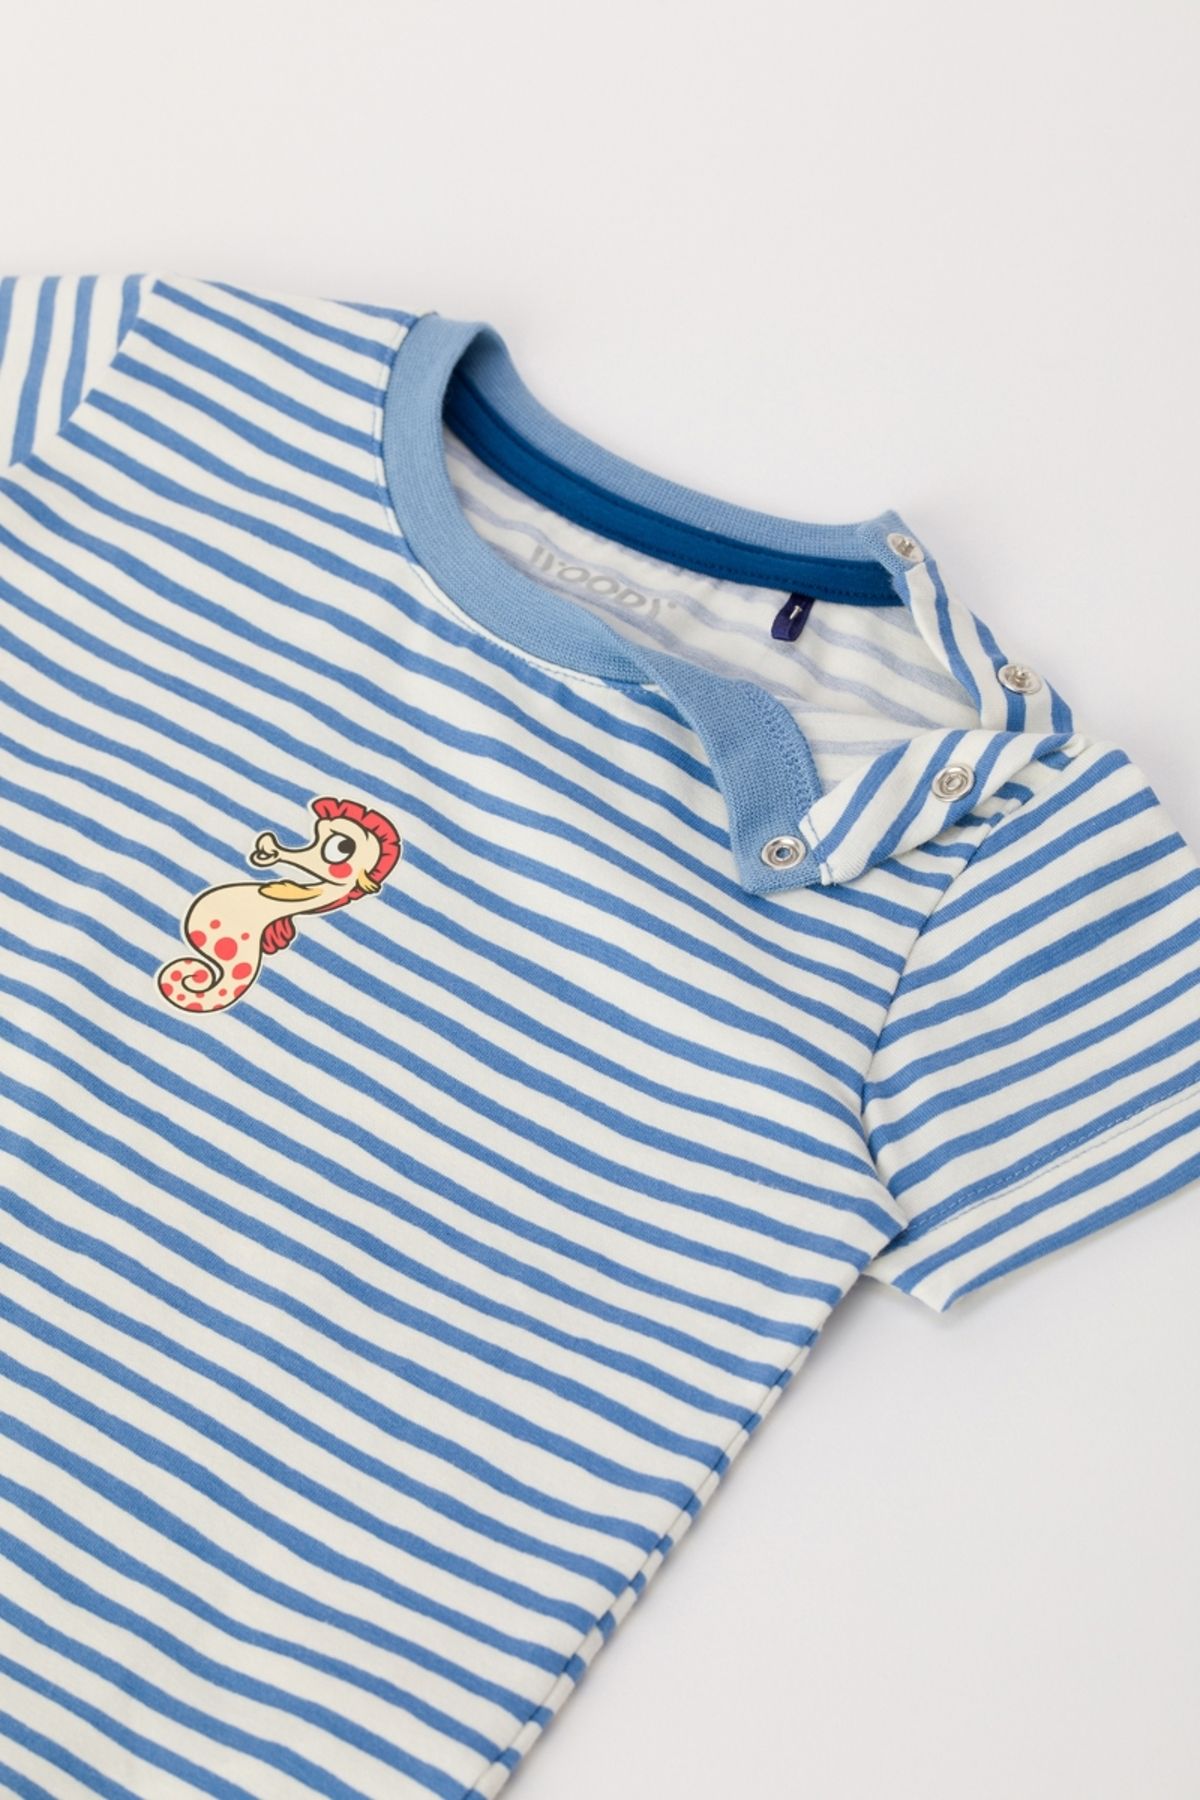 Woody Pamuklu Erkek Bebek Pijama-pza - 921-denizatı Temalı Çizgili Mavi